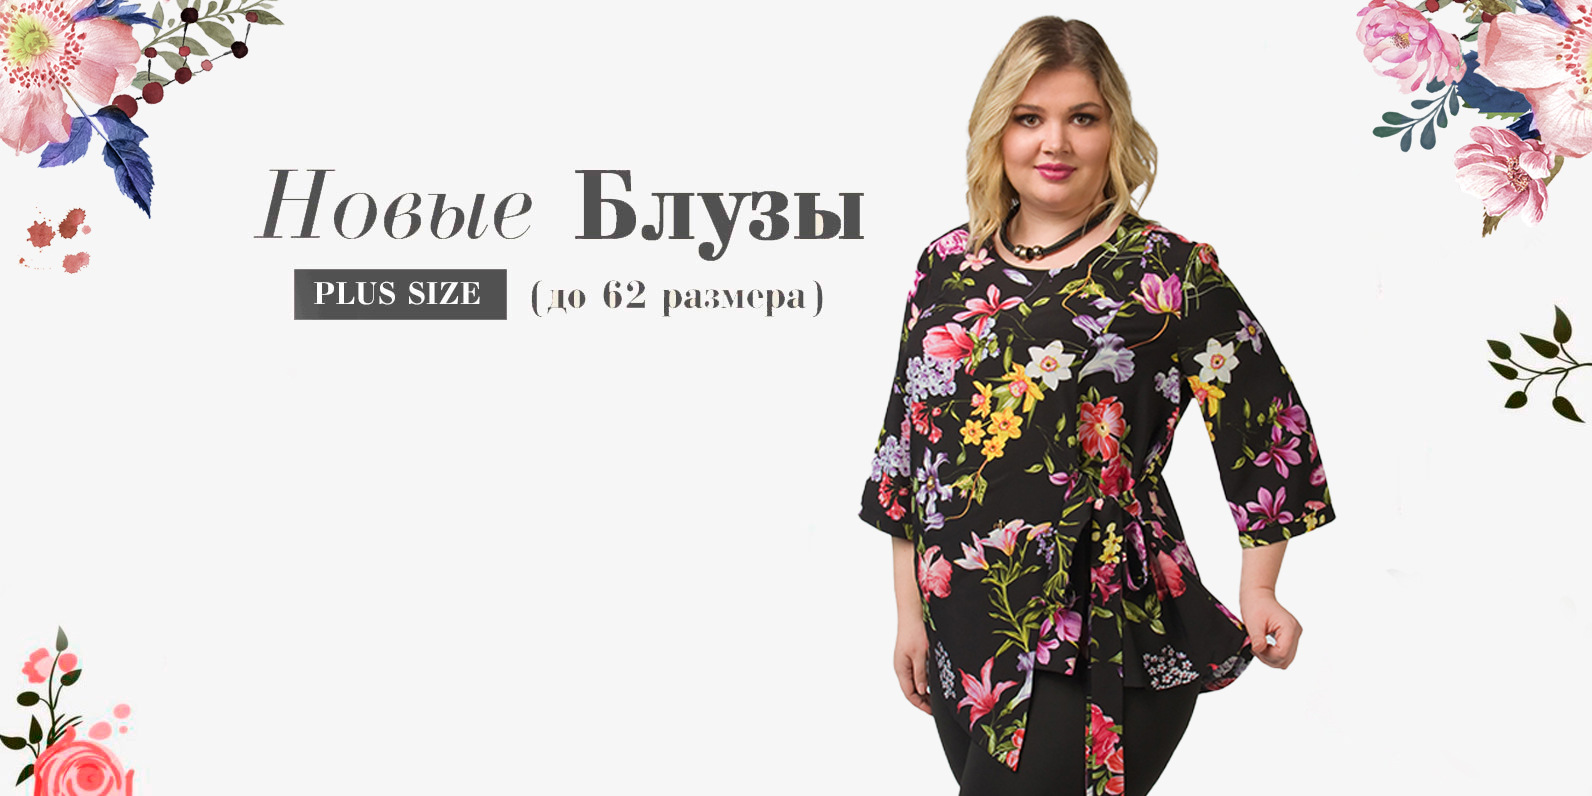 Добираем минималку) СKС-мода-69. Восхитительная женская одежда отличного качества 42-70 размеров. Цены от 380 руб. Коллекция осень/зима 2020.